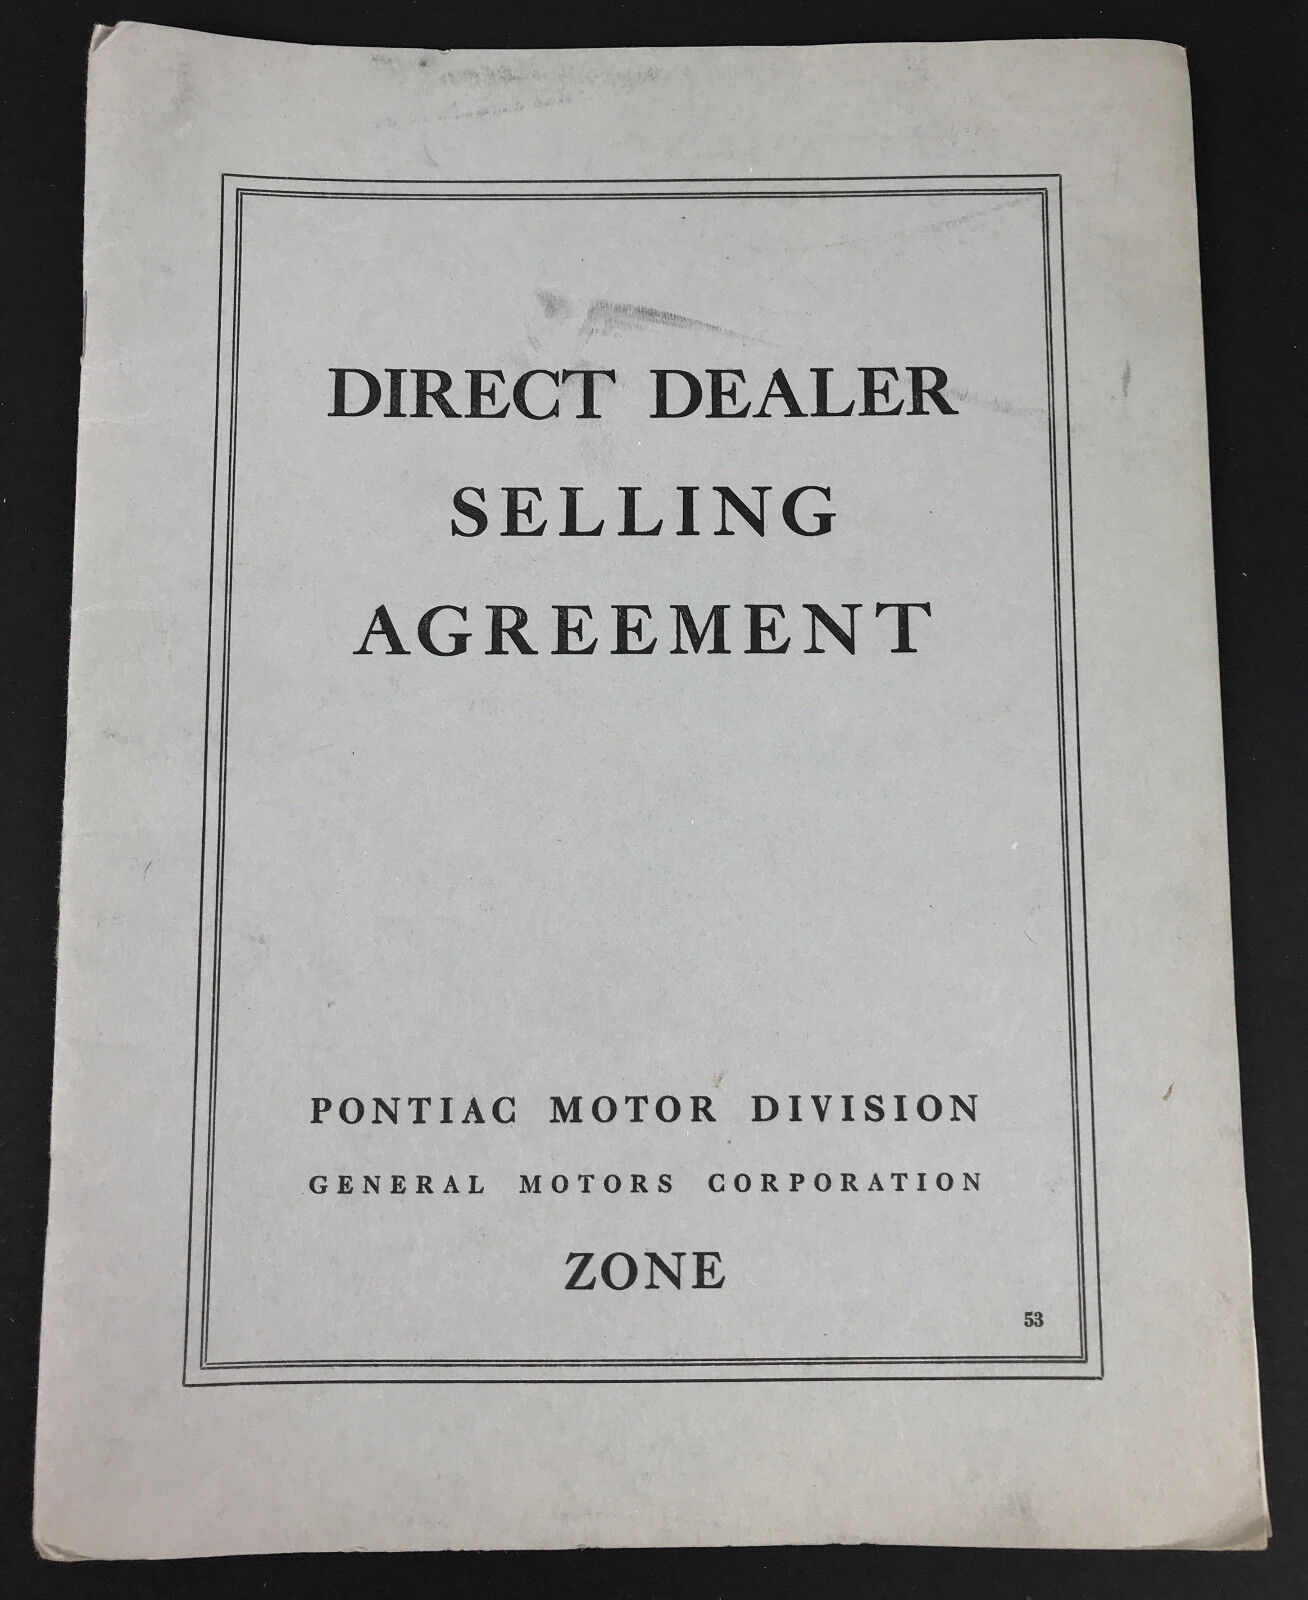 Vintage Original 1953 Pontiac Motor Division Dealer 20 page Selling Agreement